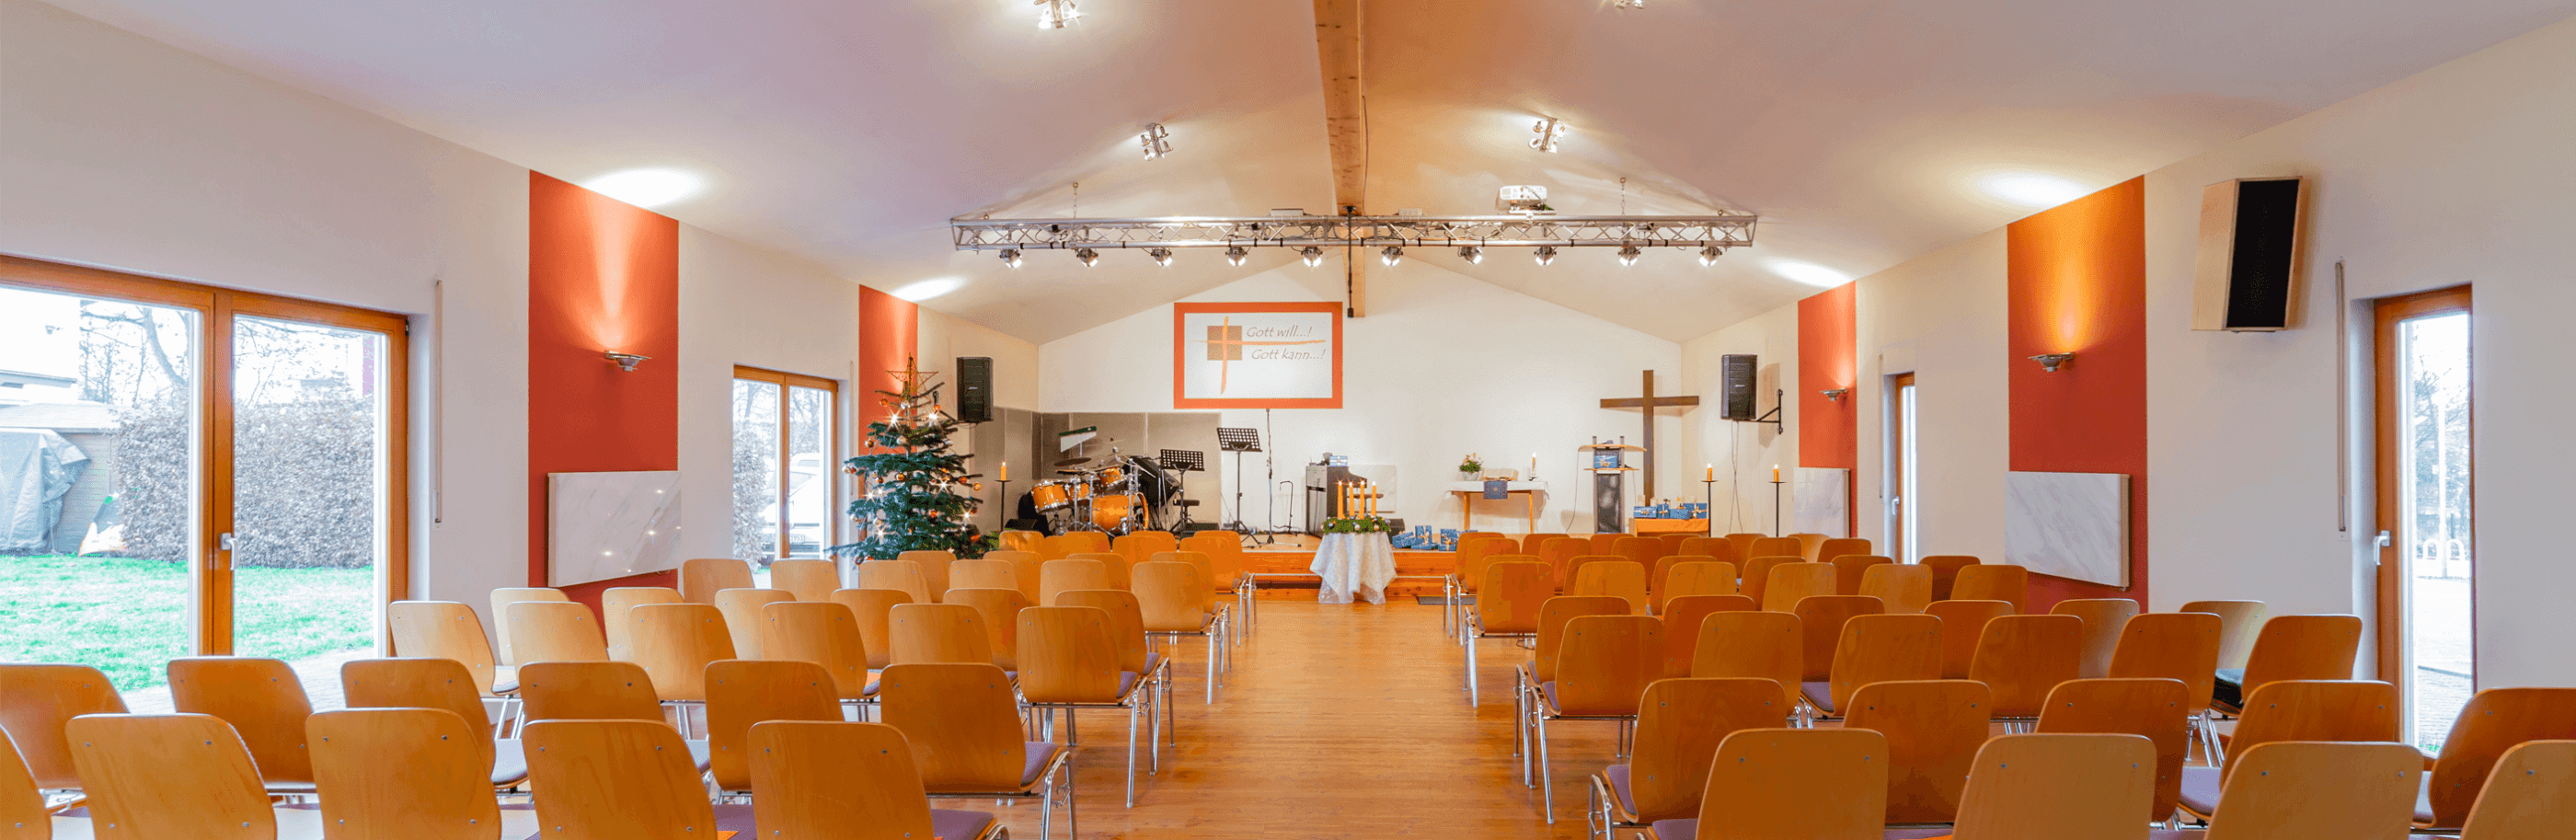 Kirche des Nazareners Seligenstadt von innen